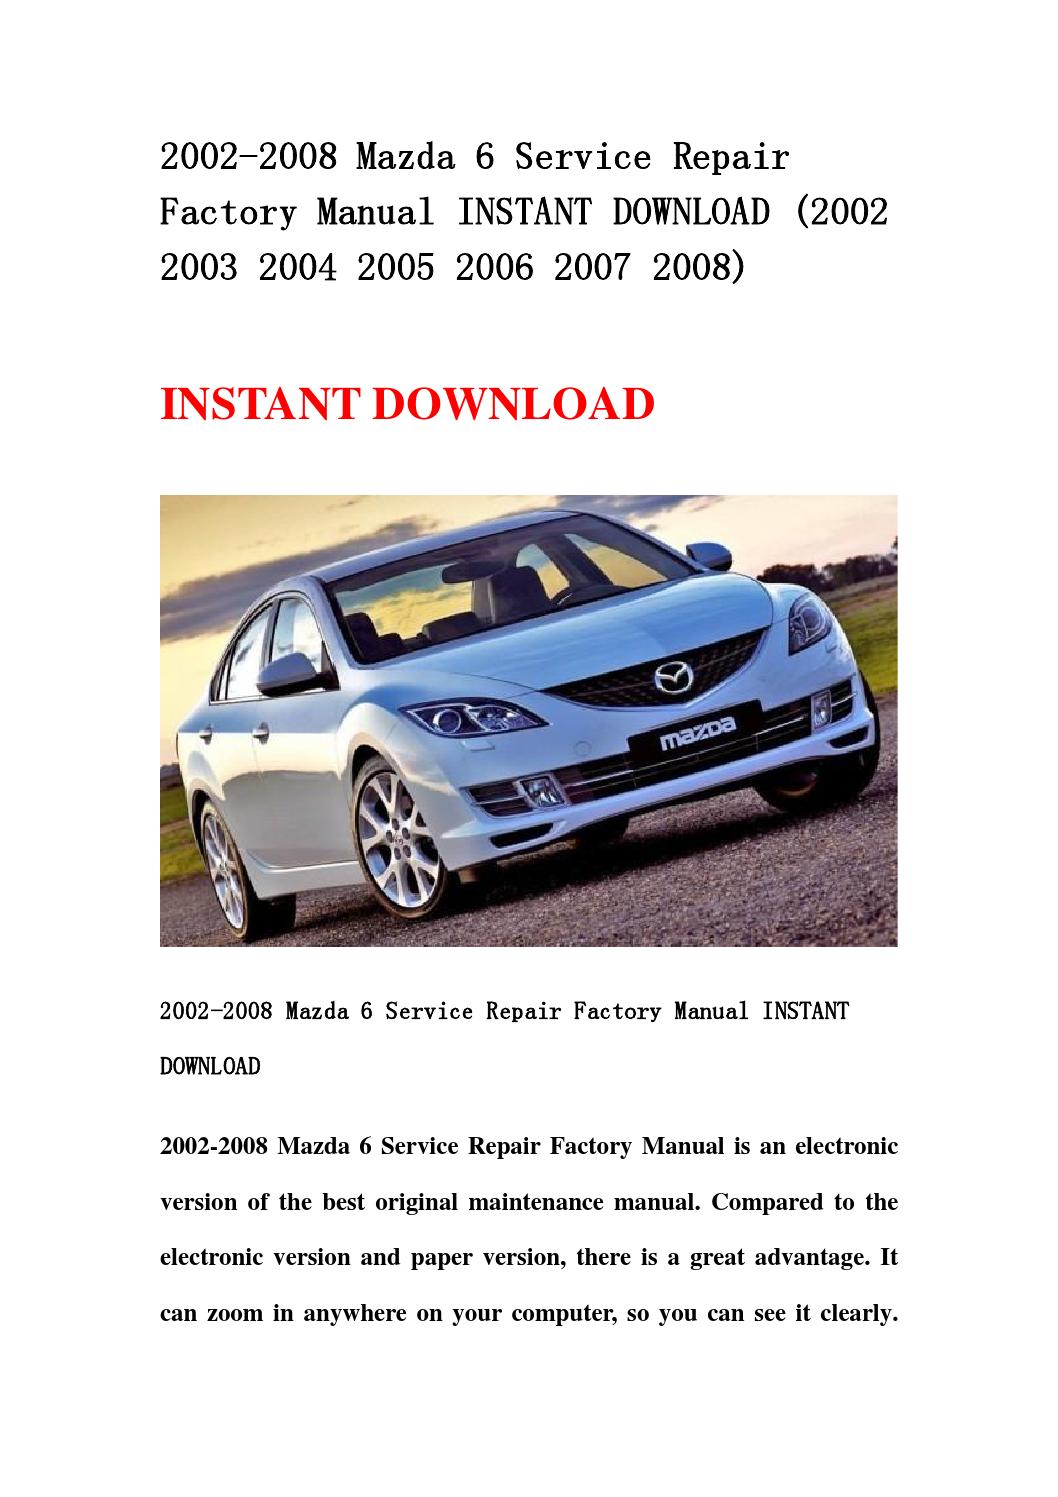 2005 mazda 6 price guide